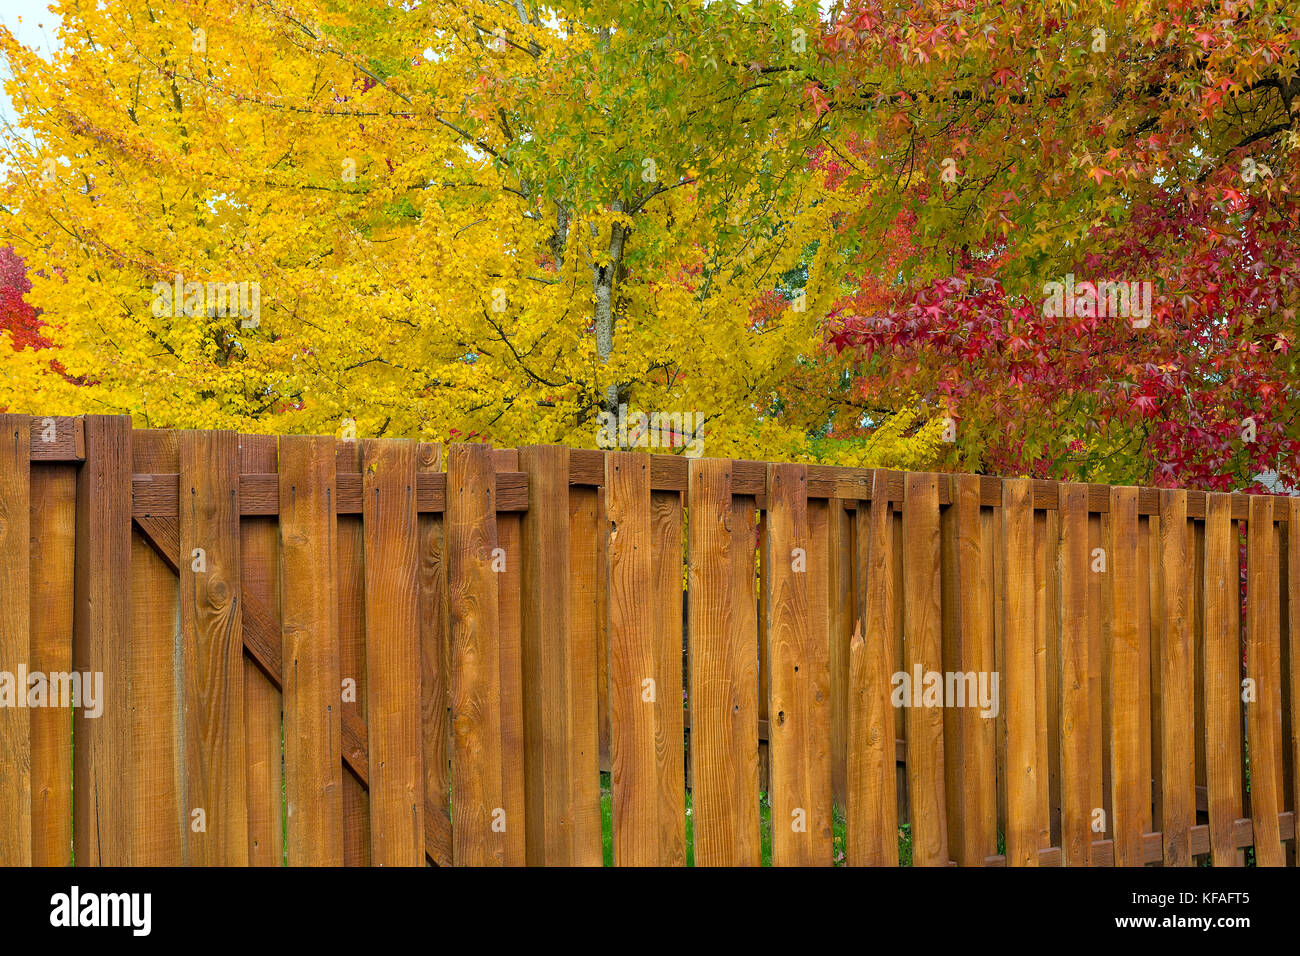 Maple sweetgum alberi luminosi picco vibranti colori autunnali da giardino cortile recinto in legno Foto Stock